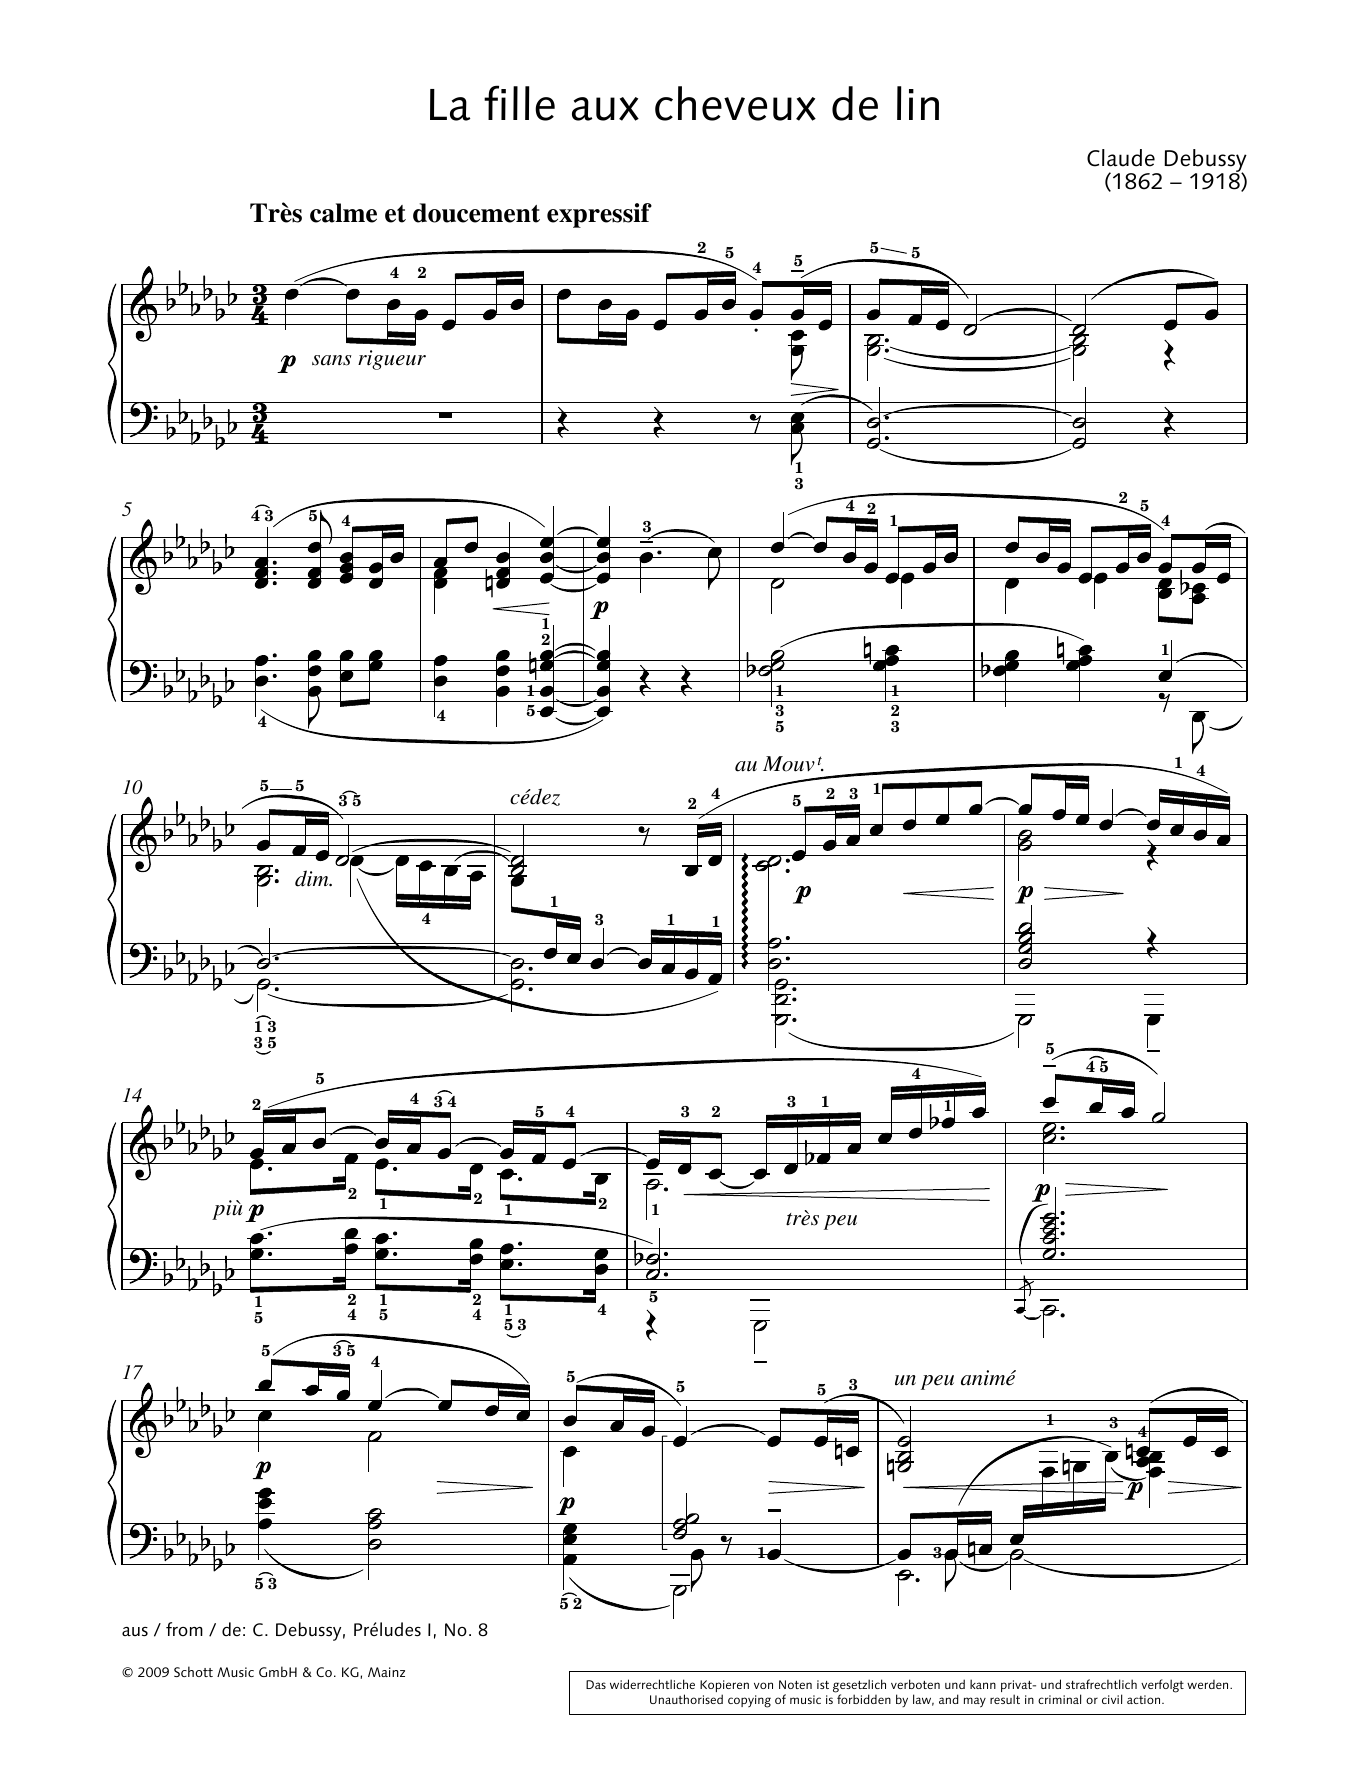 Hans-Gunter Heumann La Fille aux cheveux de lin Sheet Music Notes & Chords for Piano Solo - Download or Print PDF